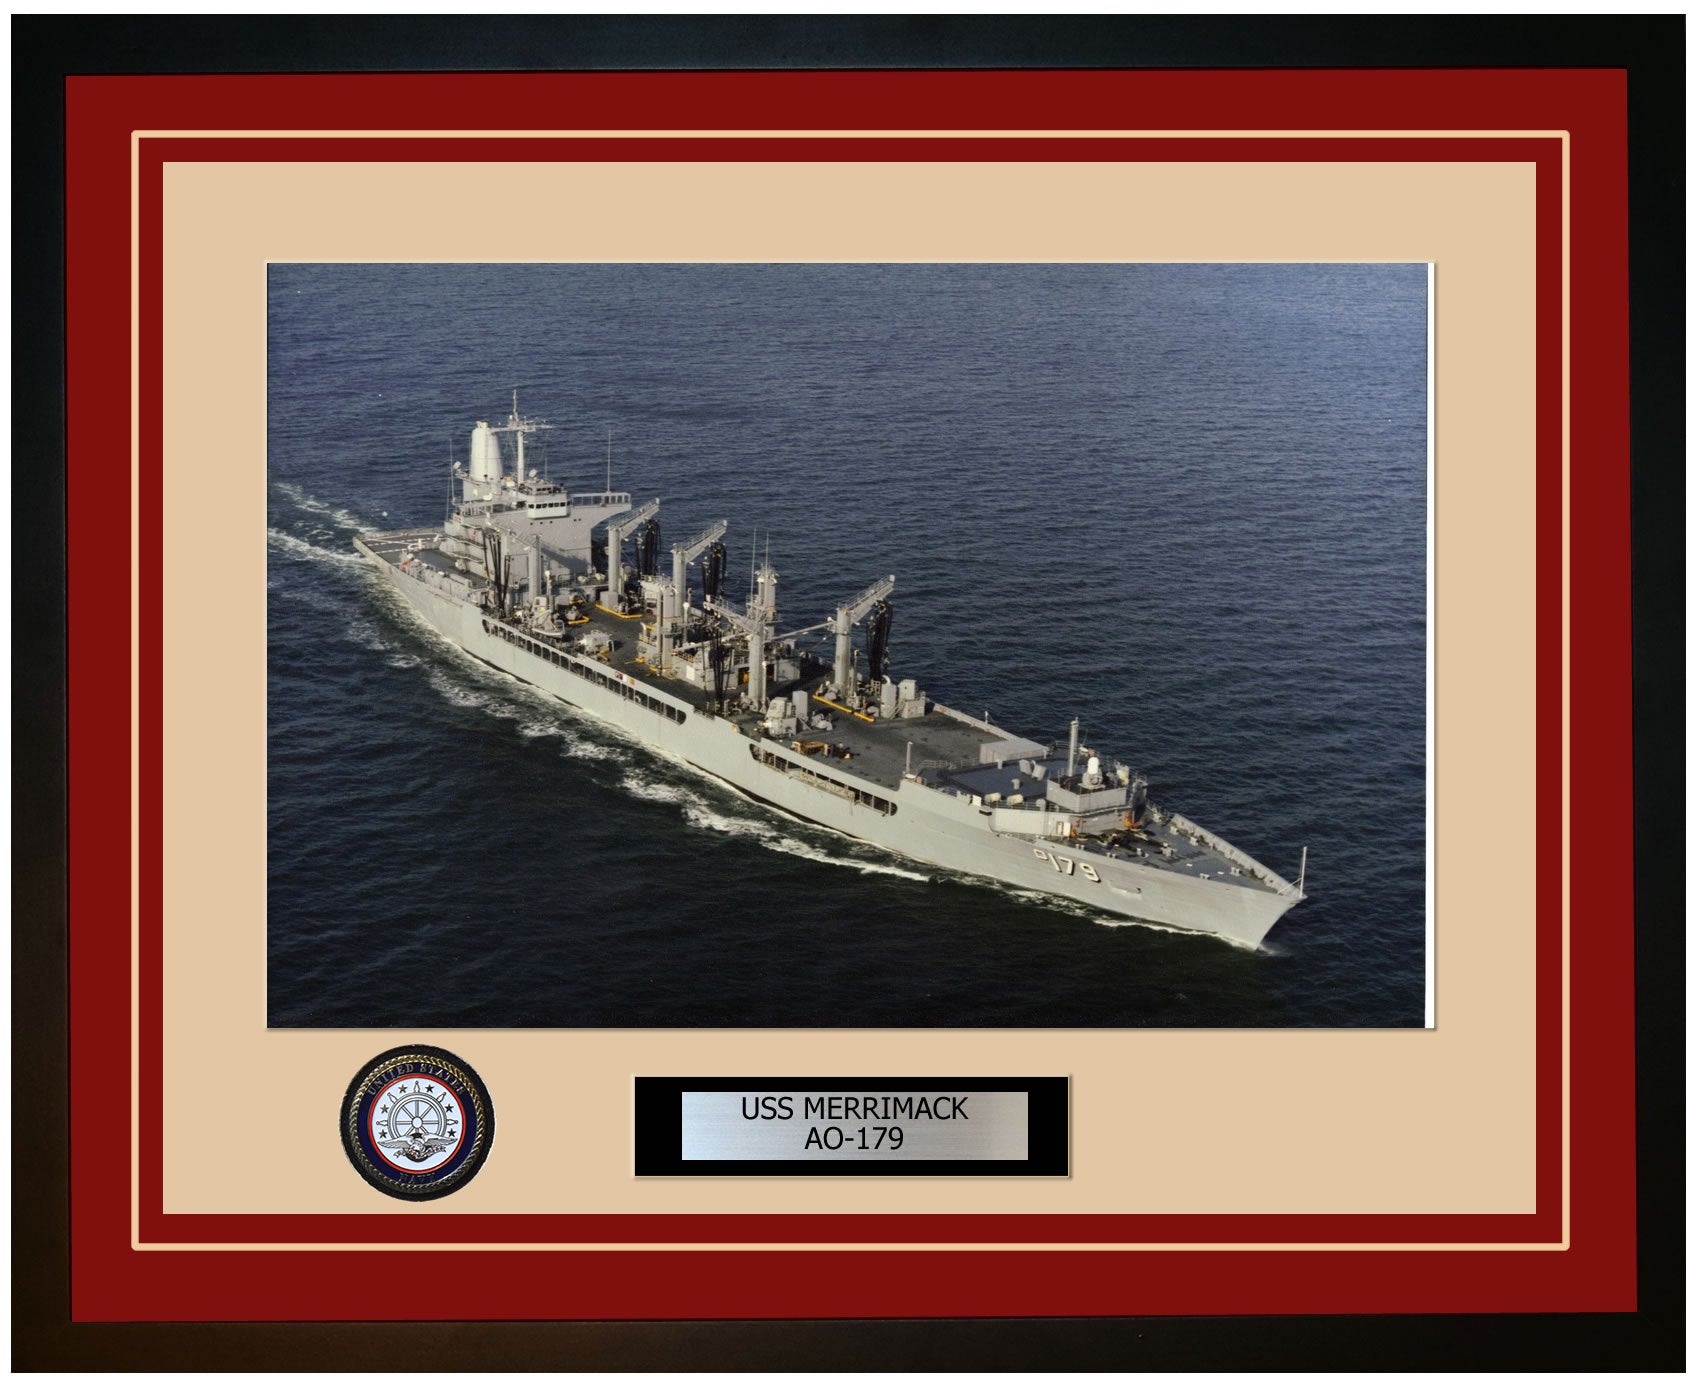 USS MERRIMACK AO-179 Framed Navy Ship Photo Burgundy